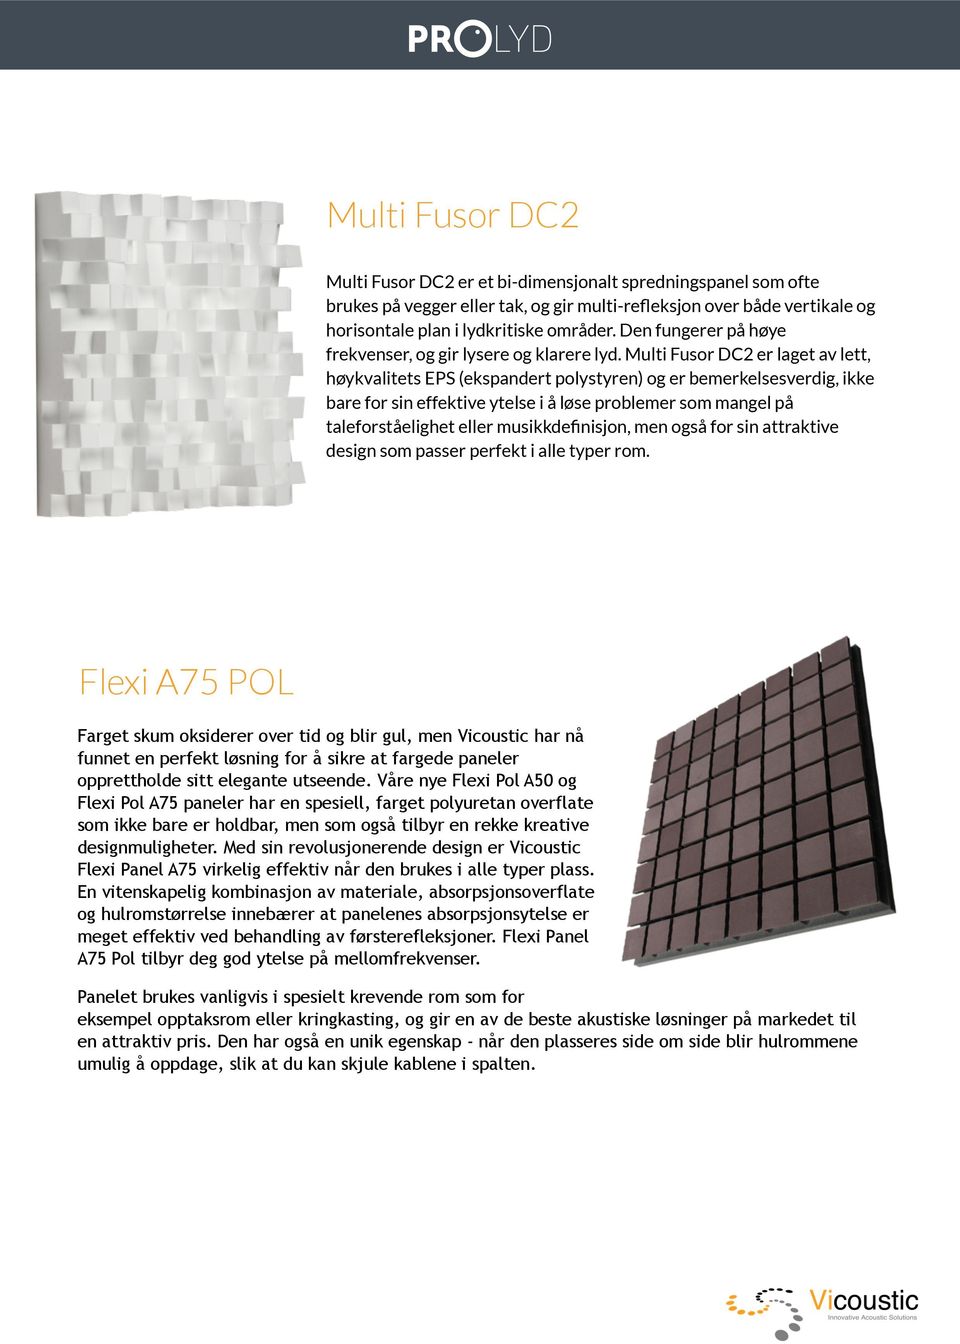 Multi Fusor DC2 er laget av lett, høykvalitets EPS (ekspandert polystyren) og er bemerkelsesverdig, ikke bare for sin effektive ytelse i å løse problemer som mangel på taleforståelighet eller